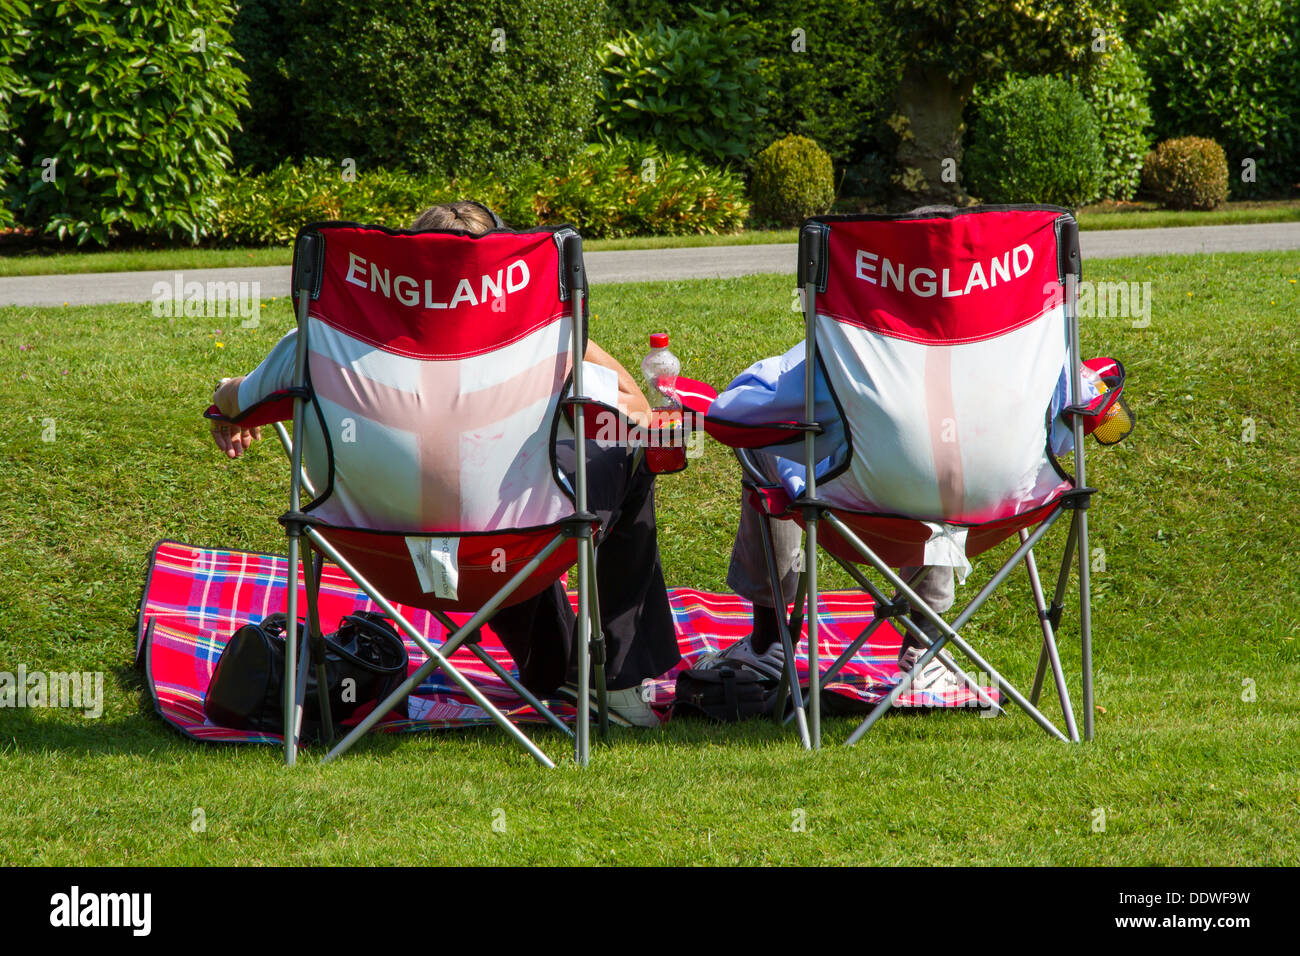 Ehepaar mit einem Picknick saß auf Klappstühlen mit England branding. Stockfoto